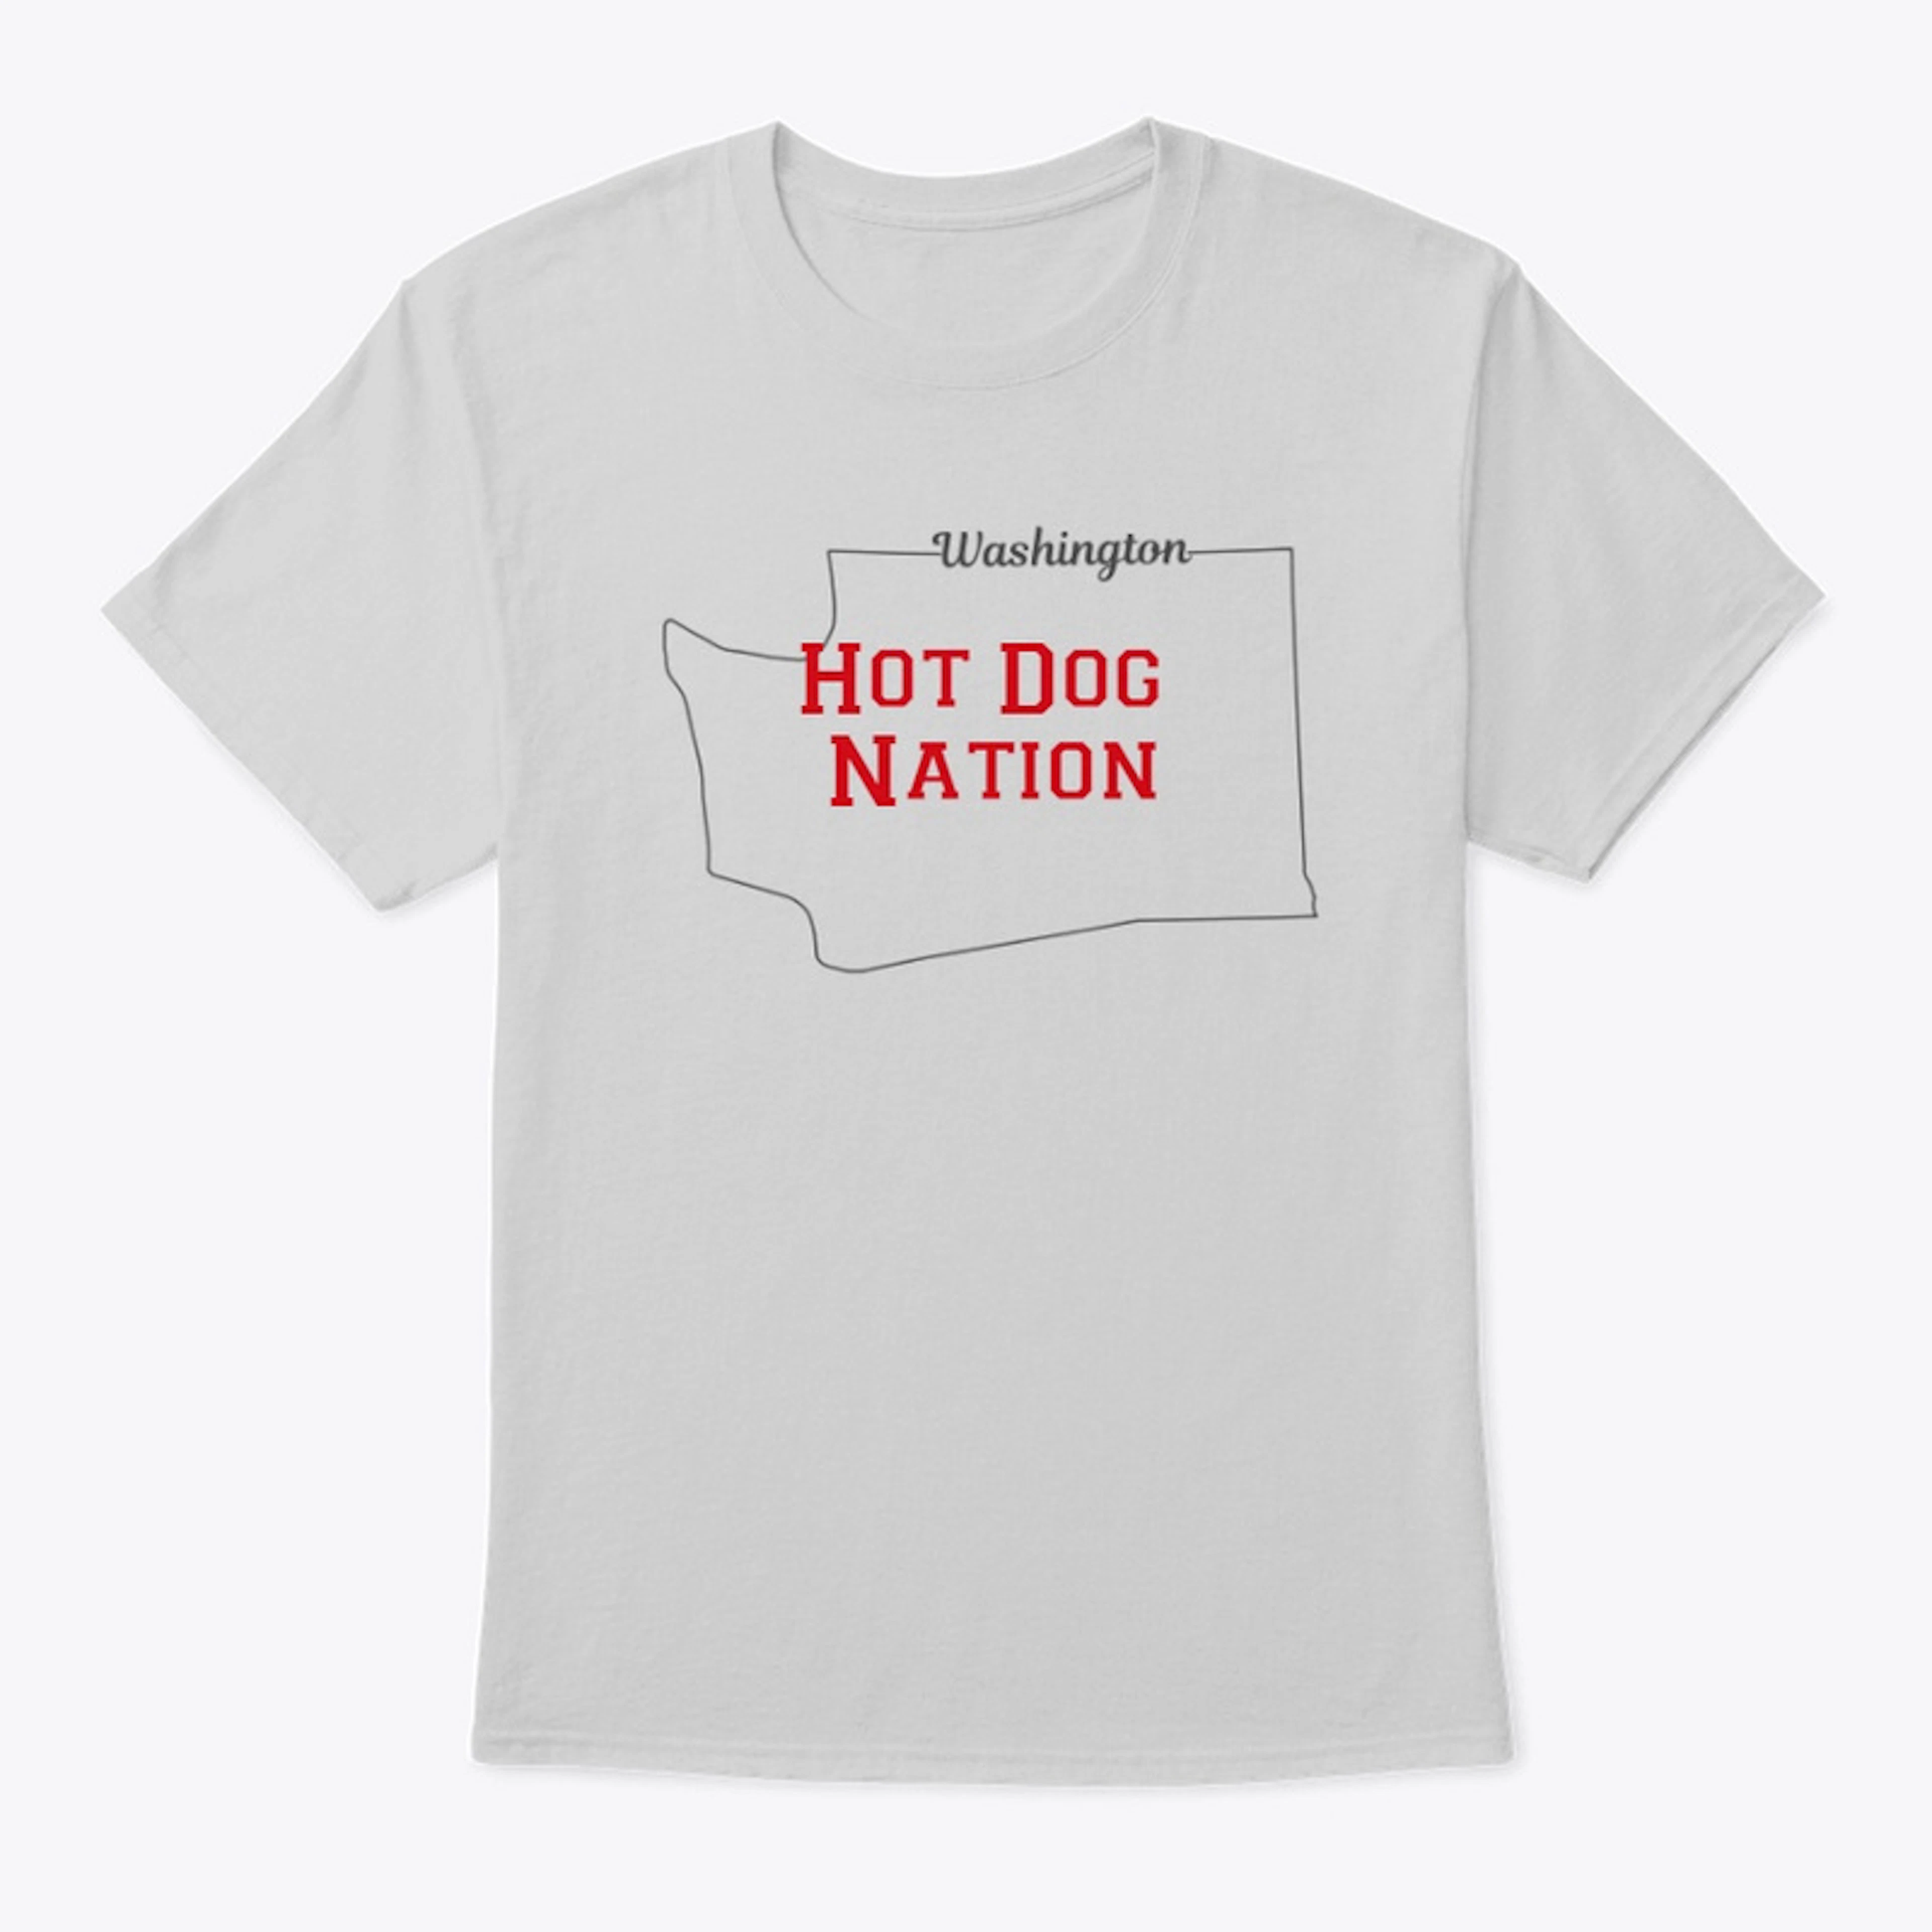 Hot Dog Nation - Washington